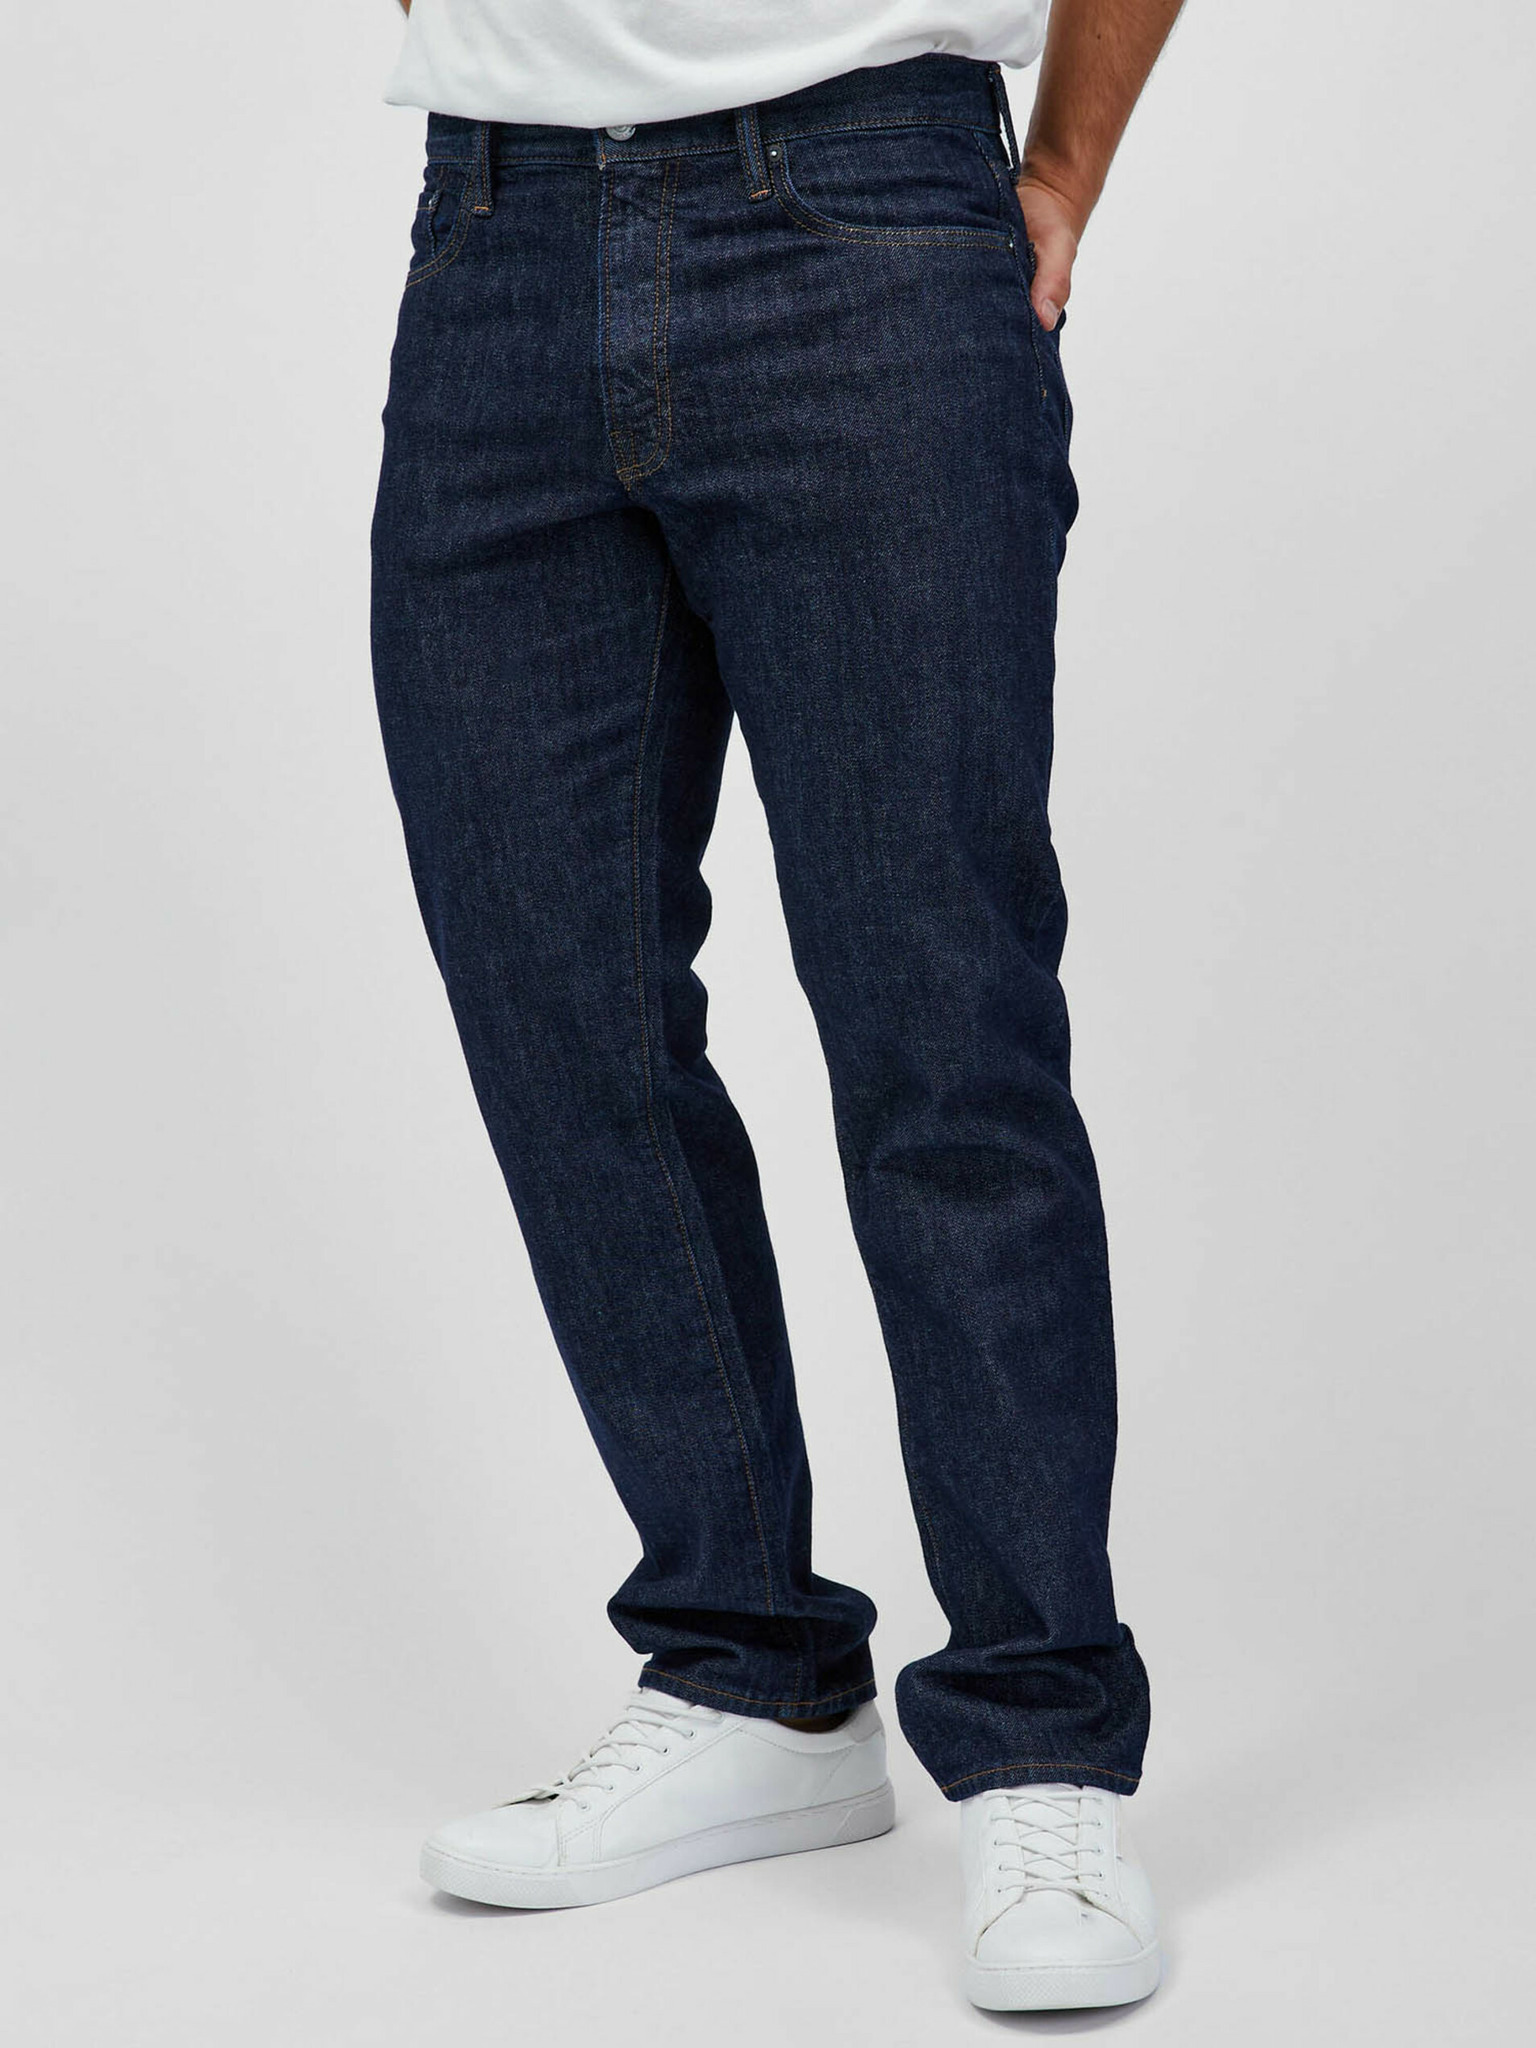 Gapflex Washwell Jeans GAP